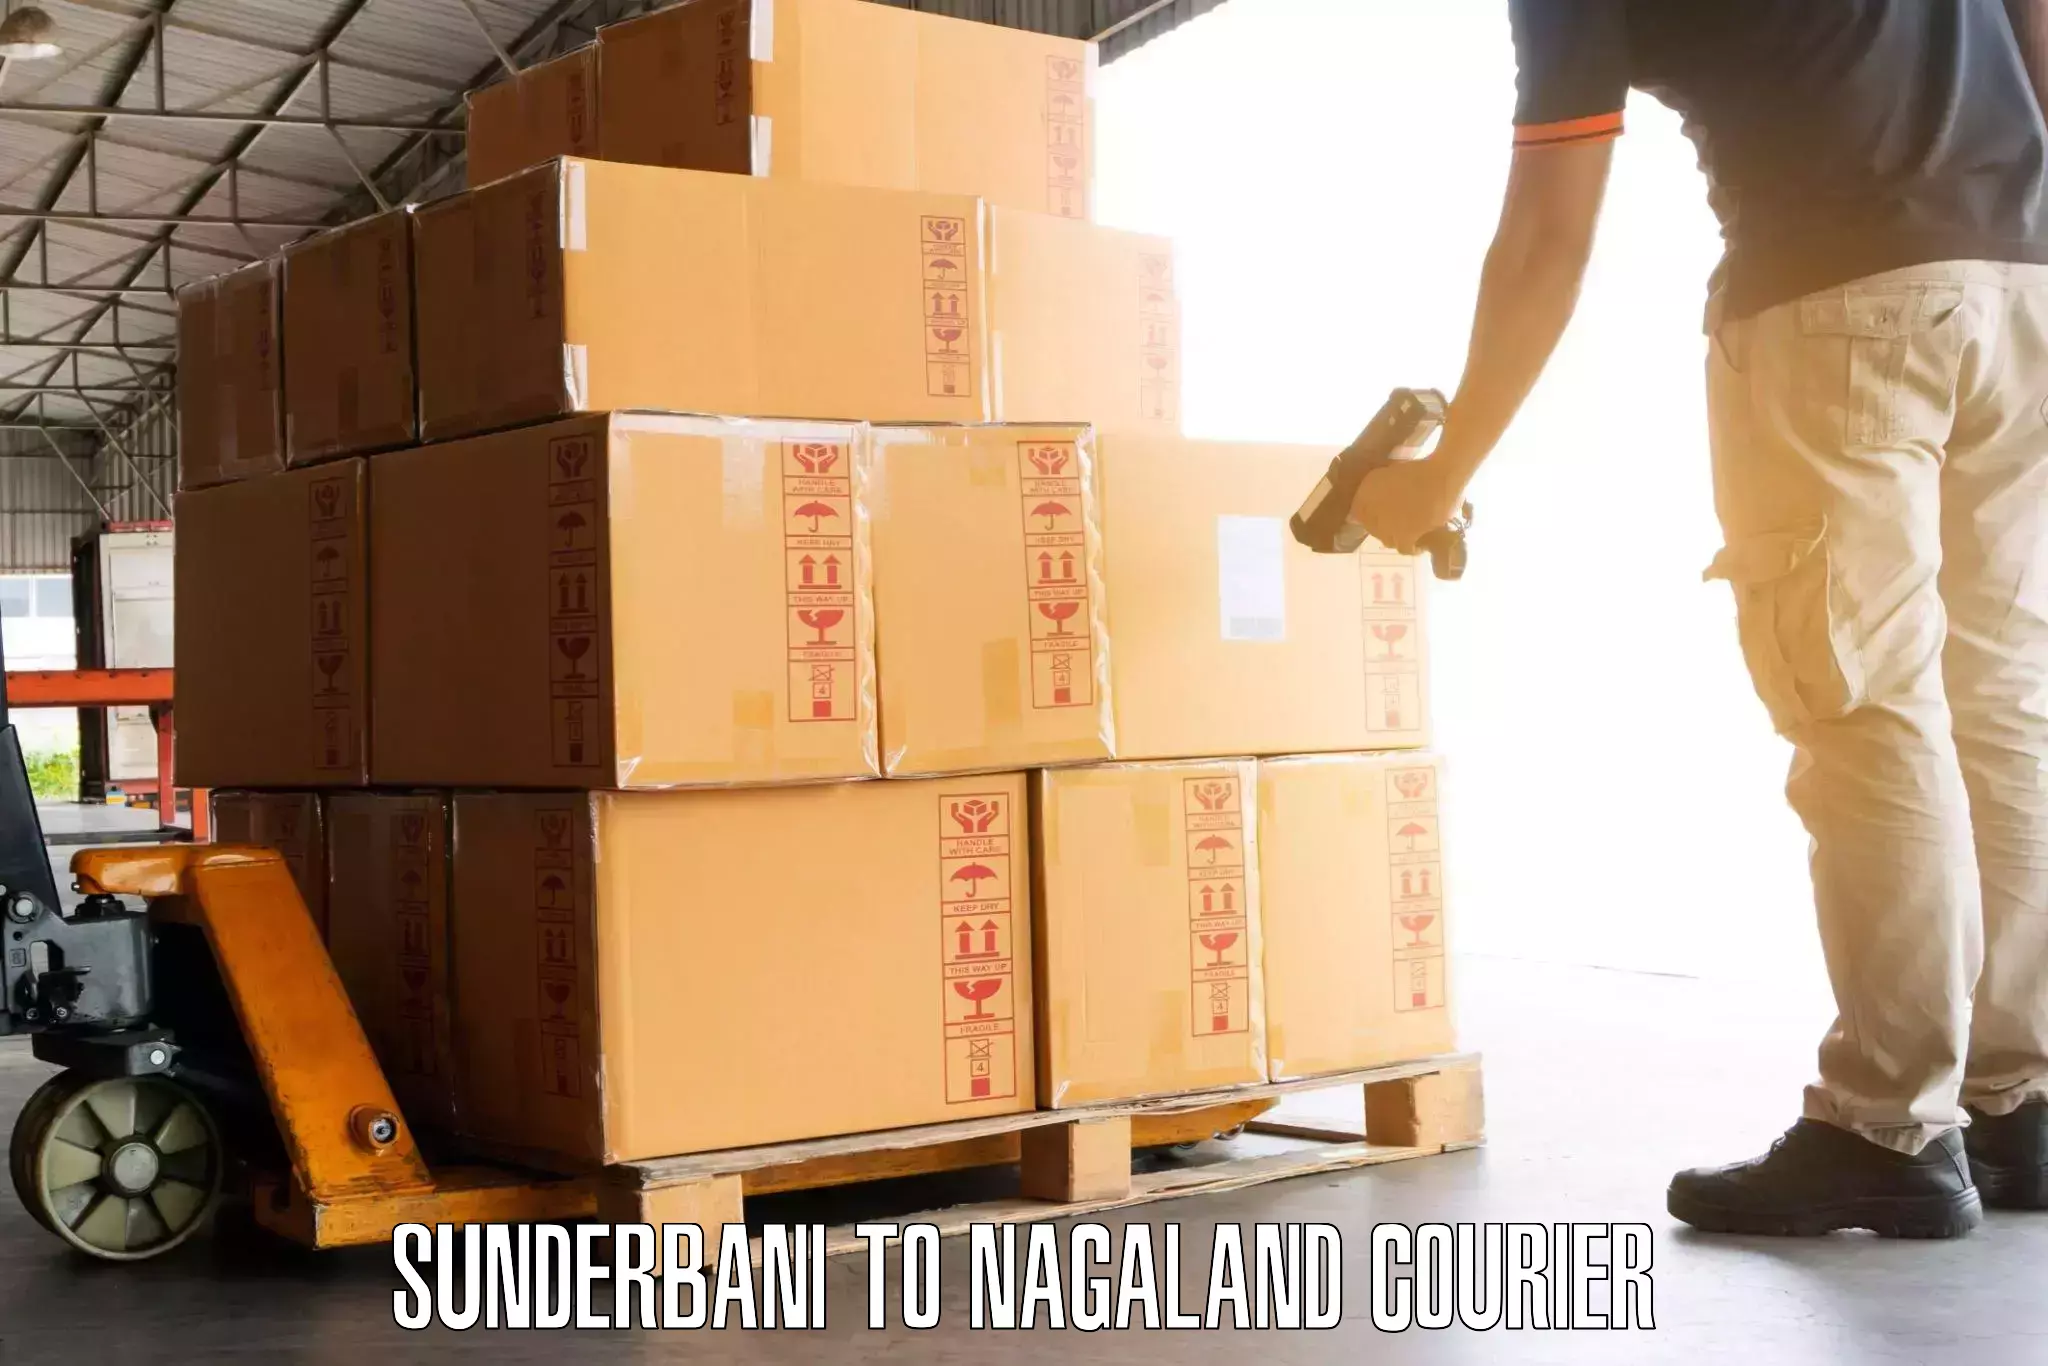 Baggage transport network Sunderbani to Nagaland